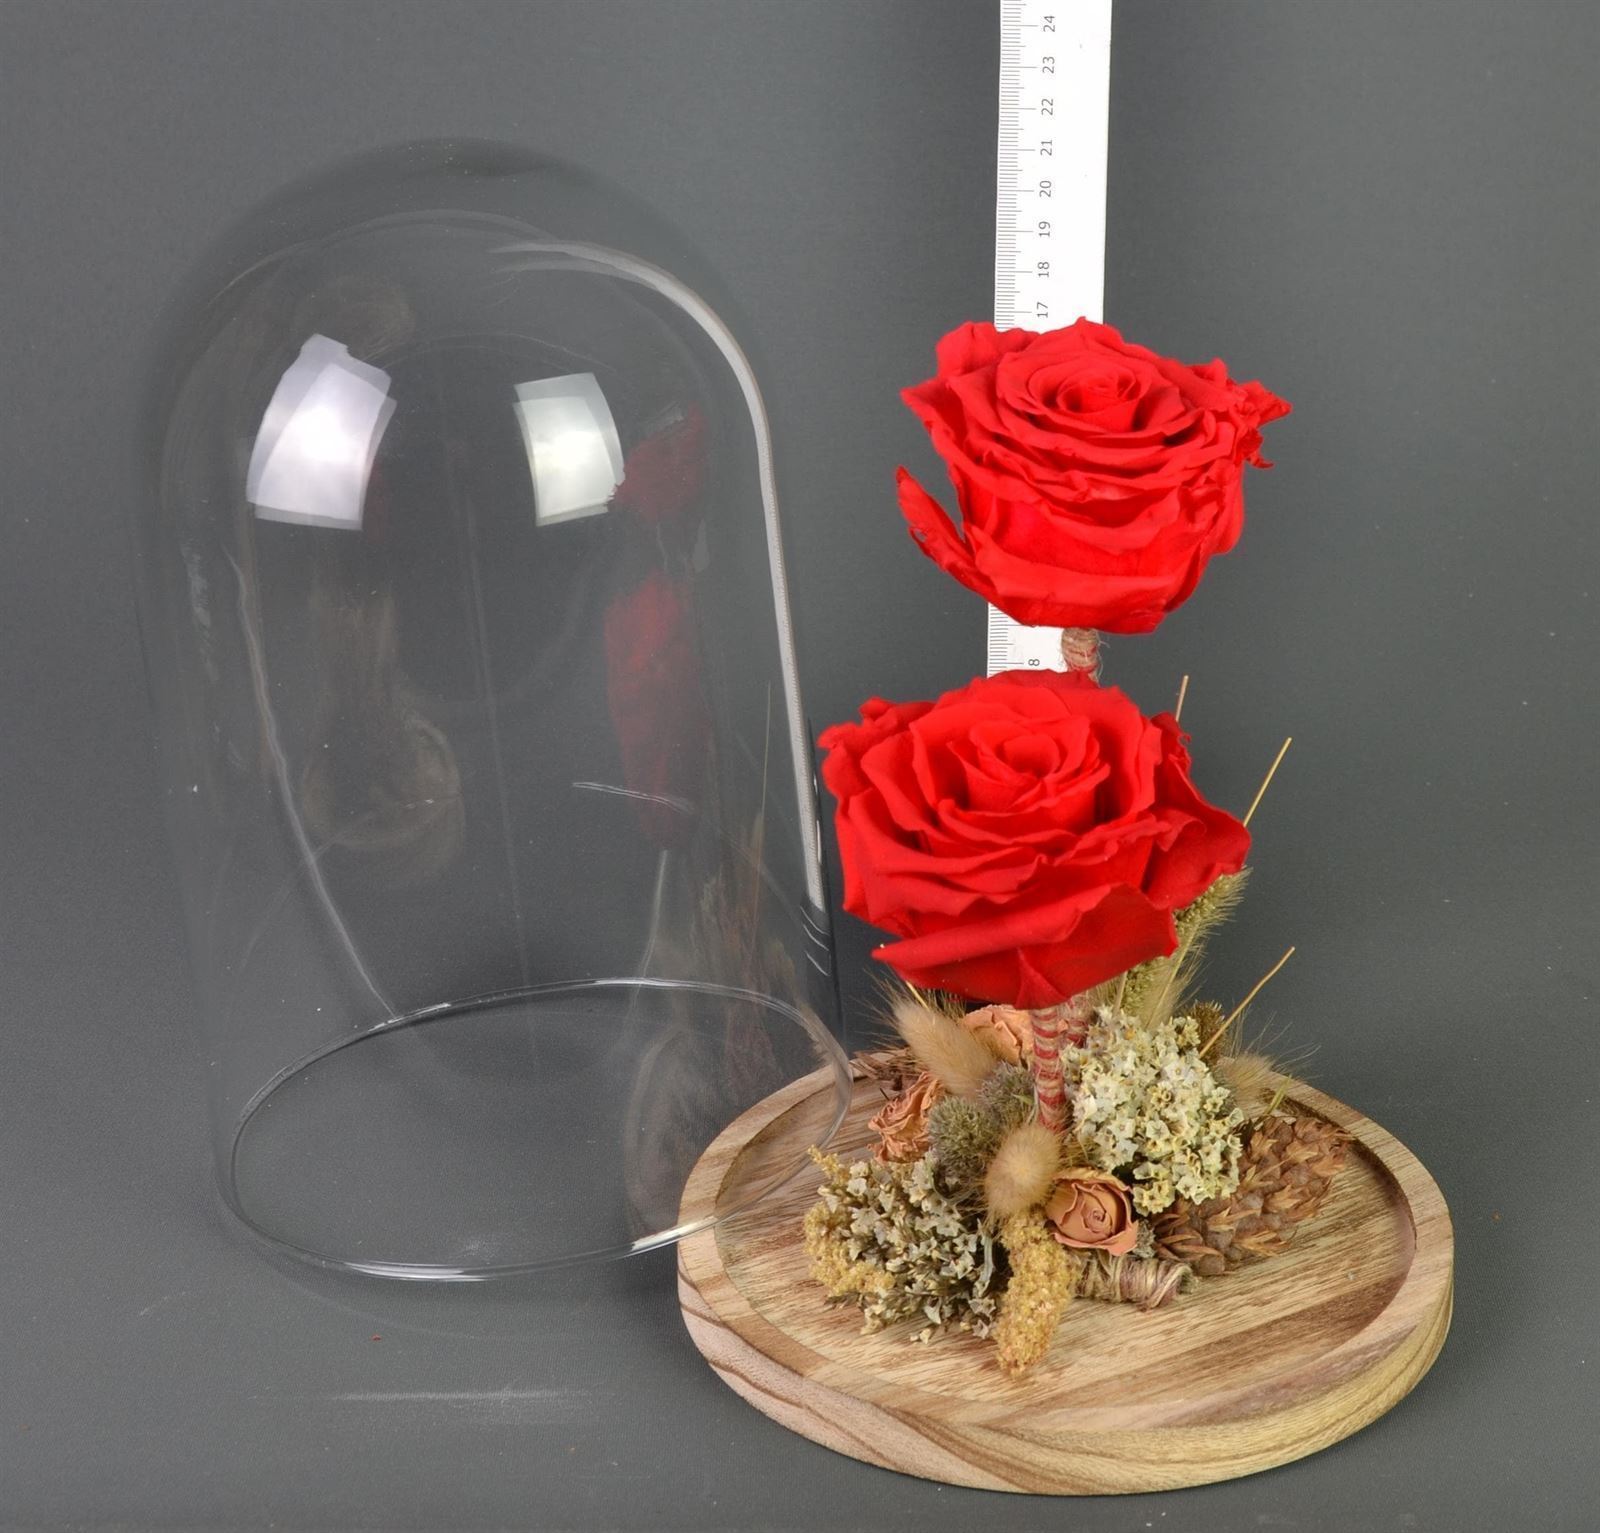 Cupula de cristal, con dos rosas preservadas.